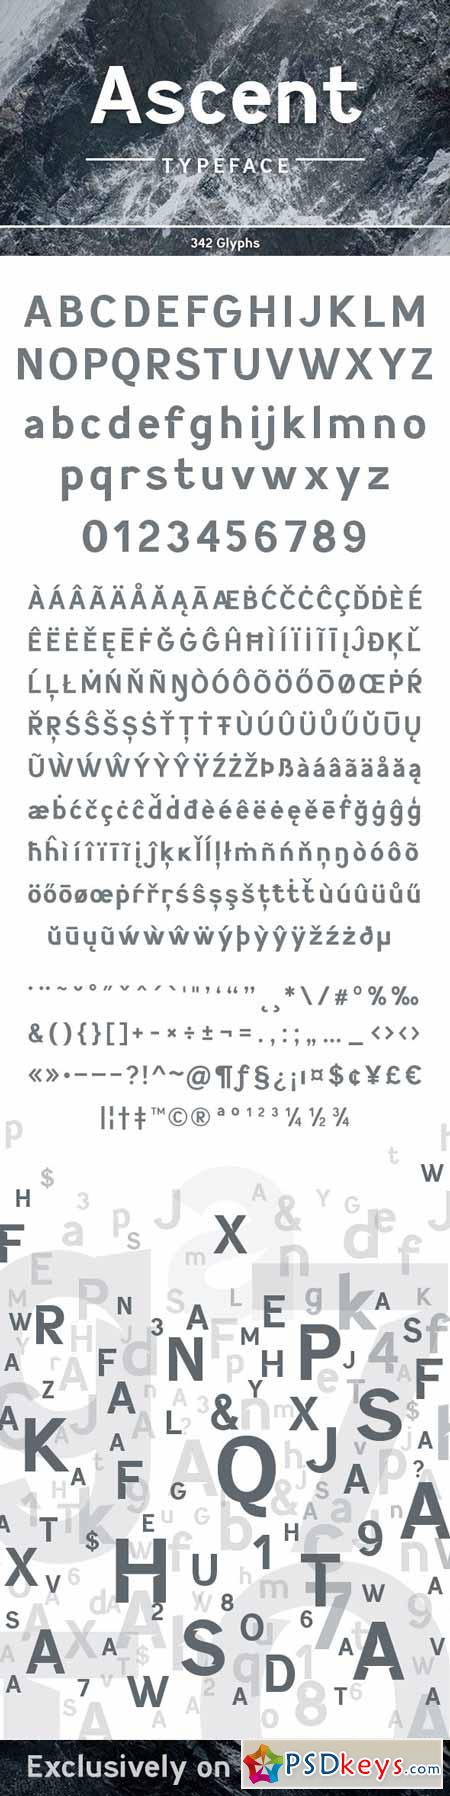 Ascent Typeface 9929760